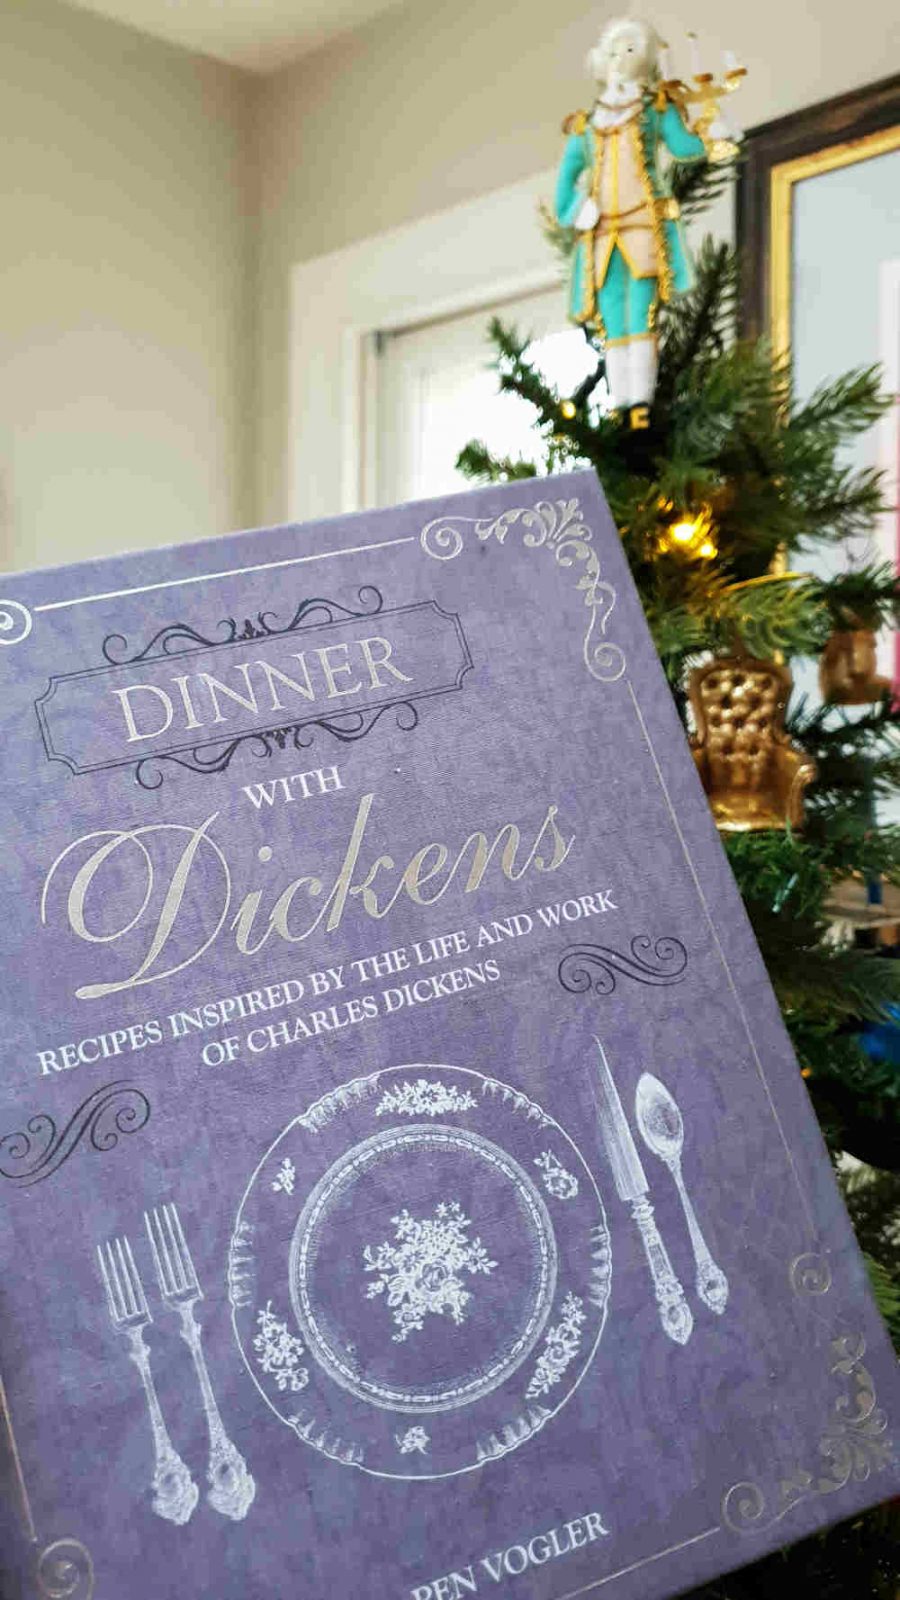 Dinner with Dickens, Pen Vogler